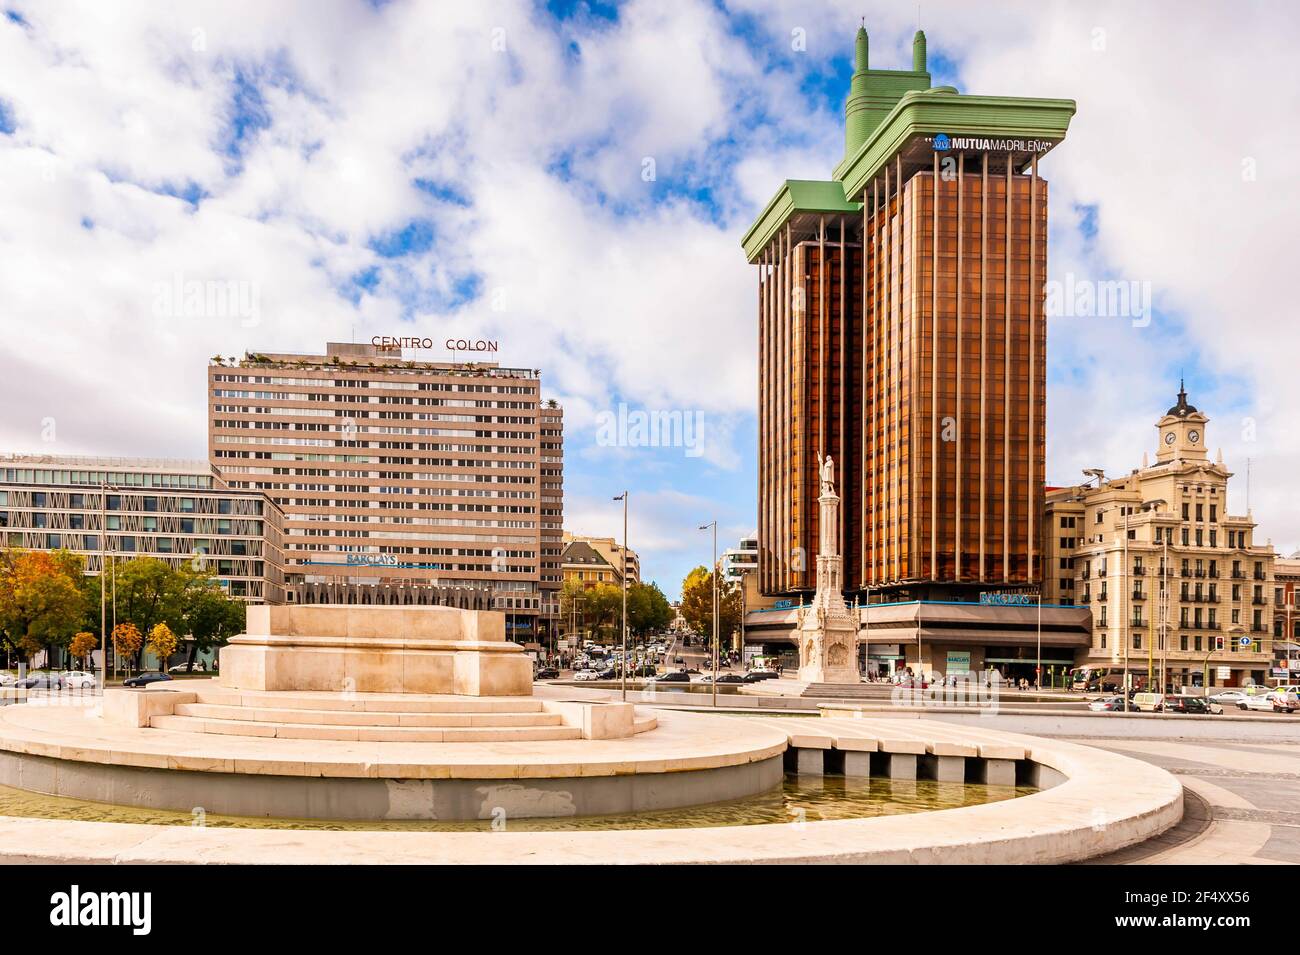 Plaza Colon, grande place de Madrid en Espagne Banque D'Images